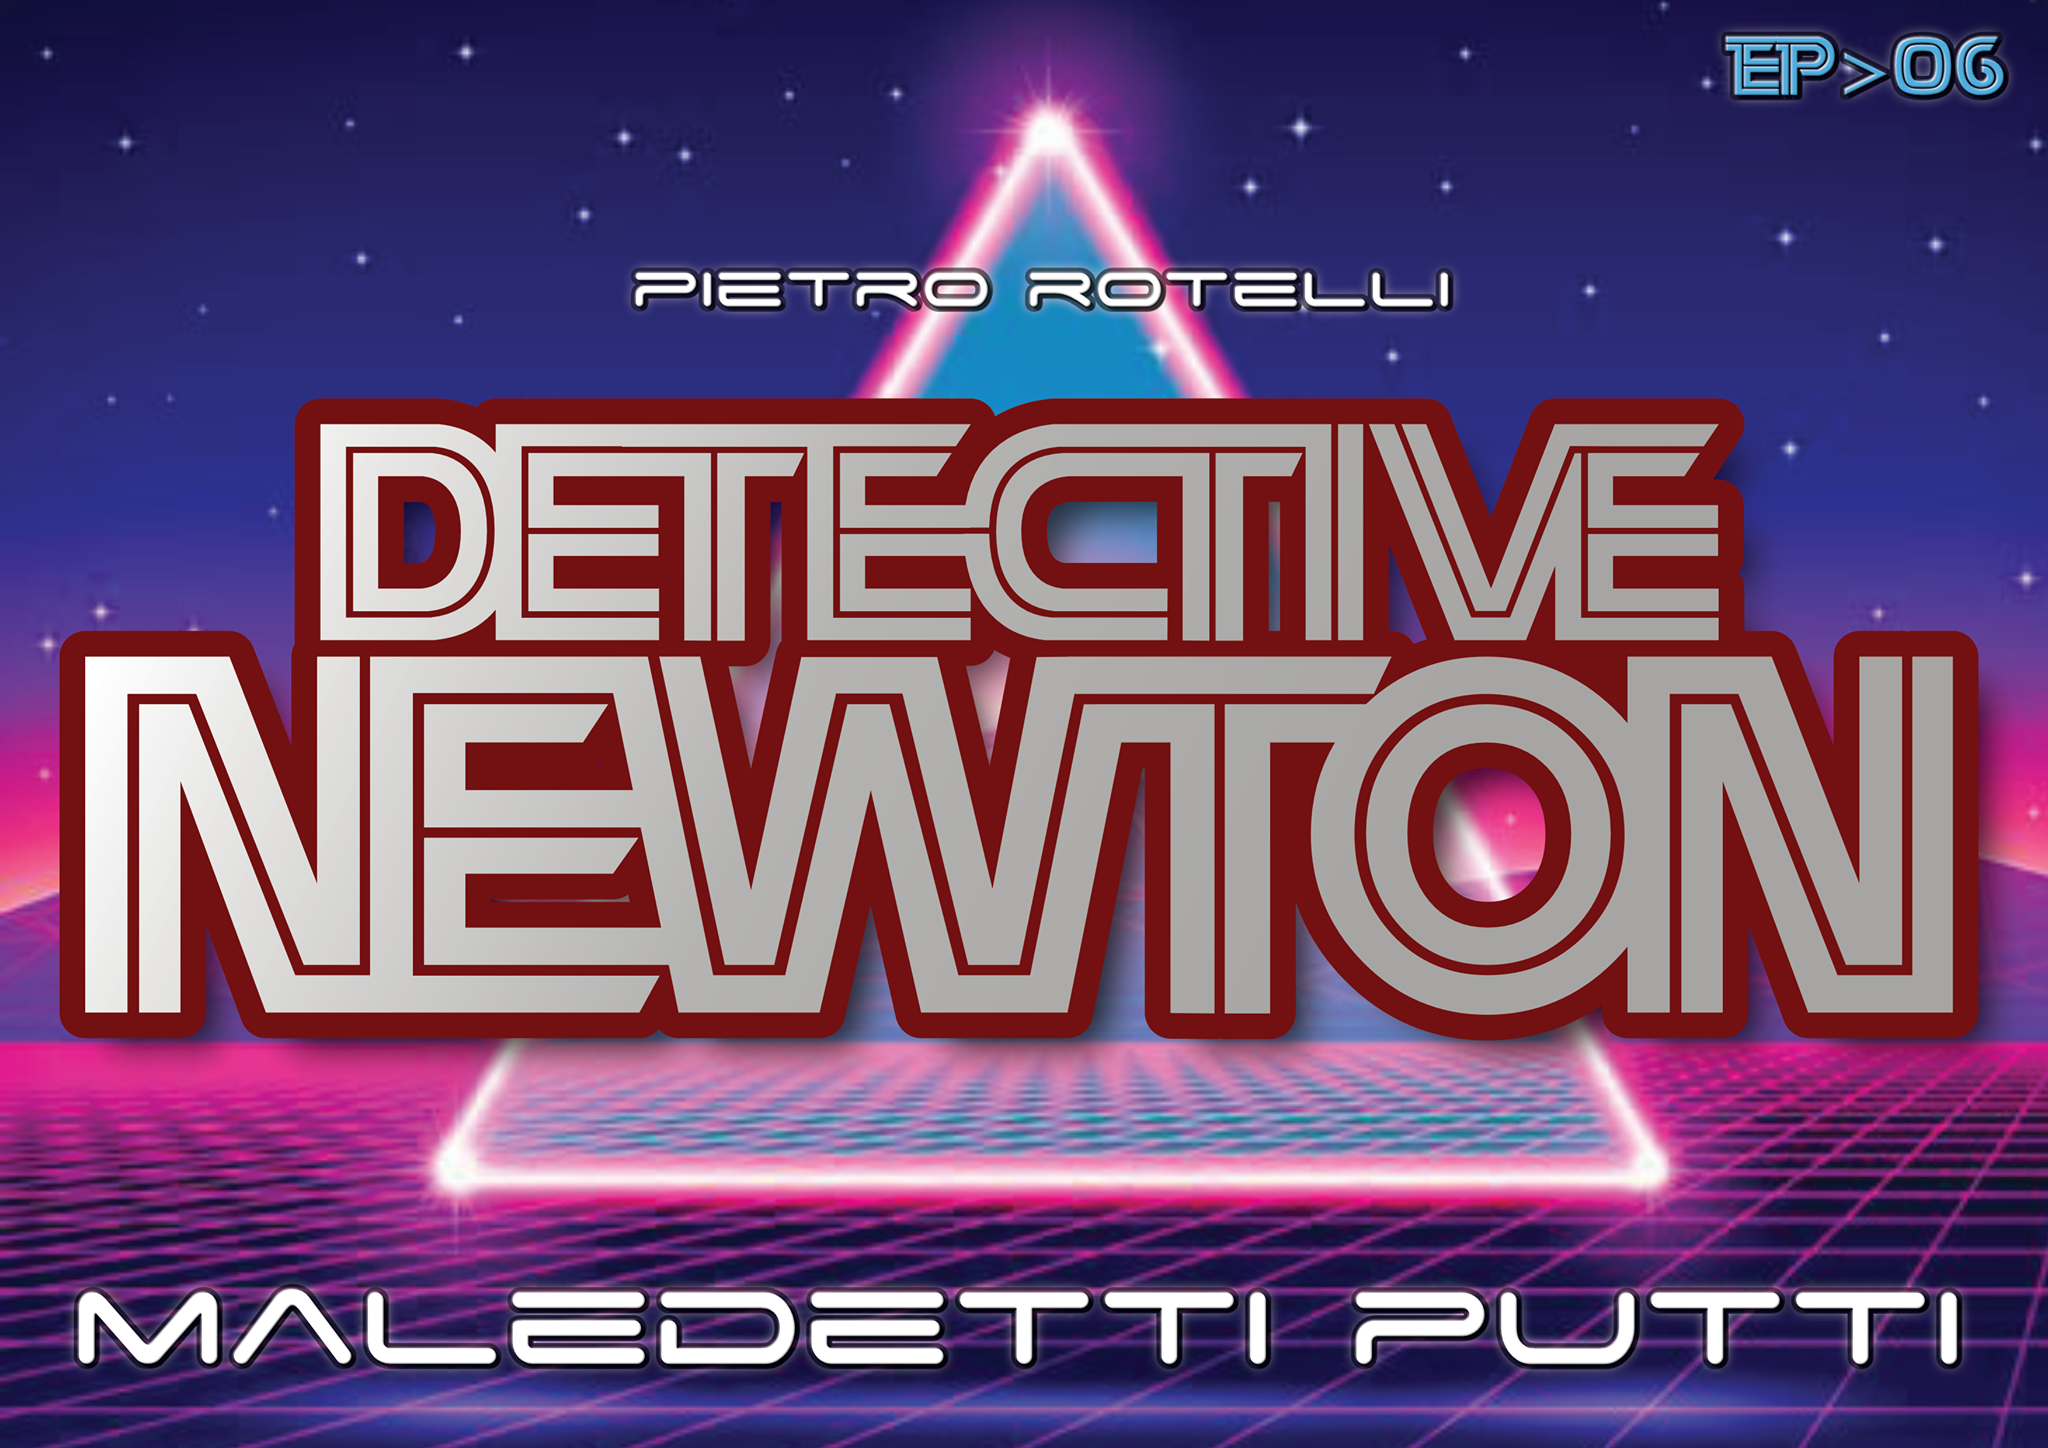 - Maledetti Putti (Un'Avventura Del Detective Newton Ep.06)